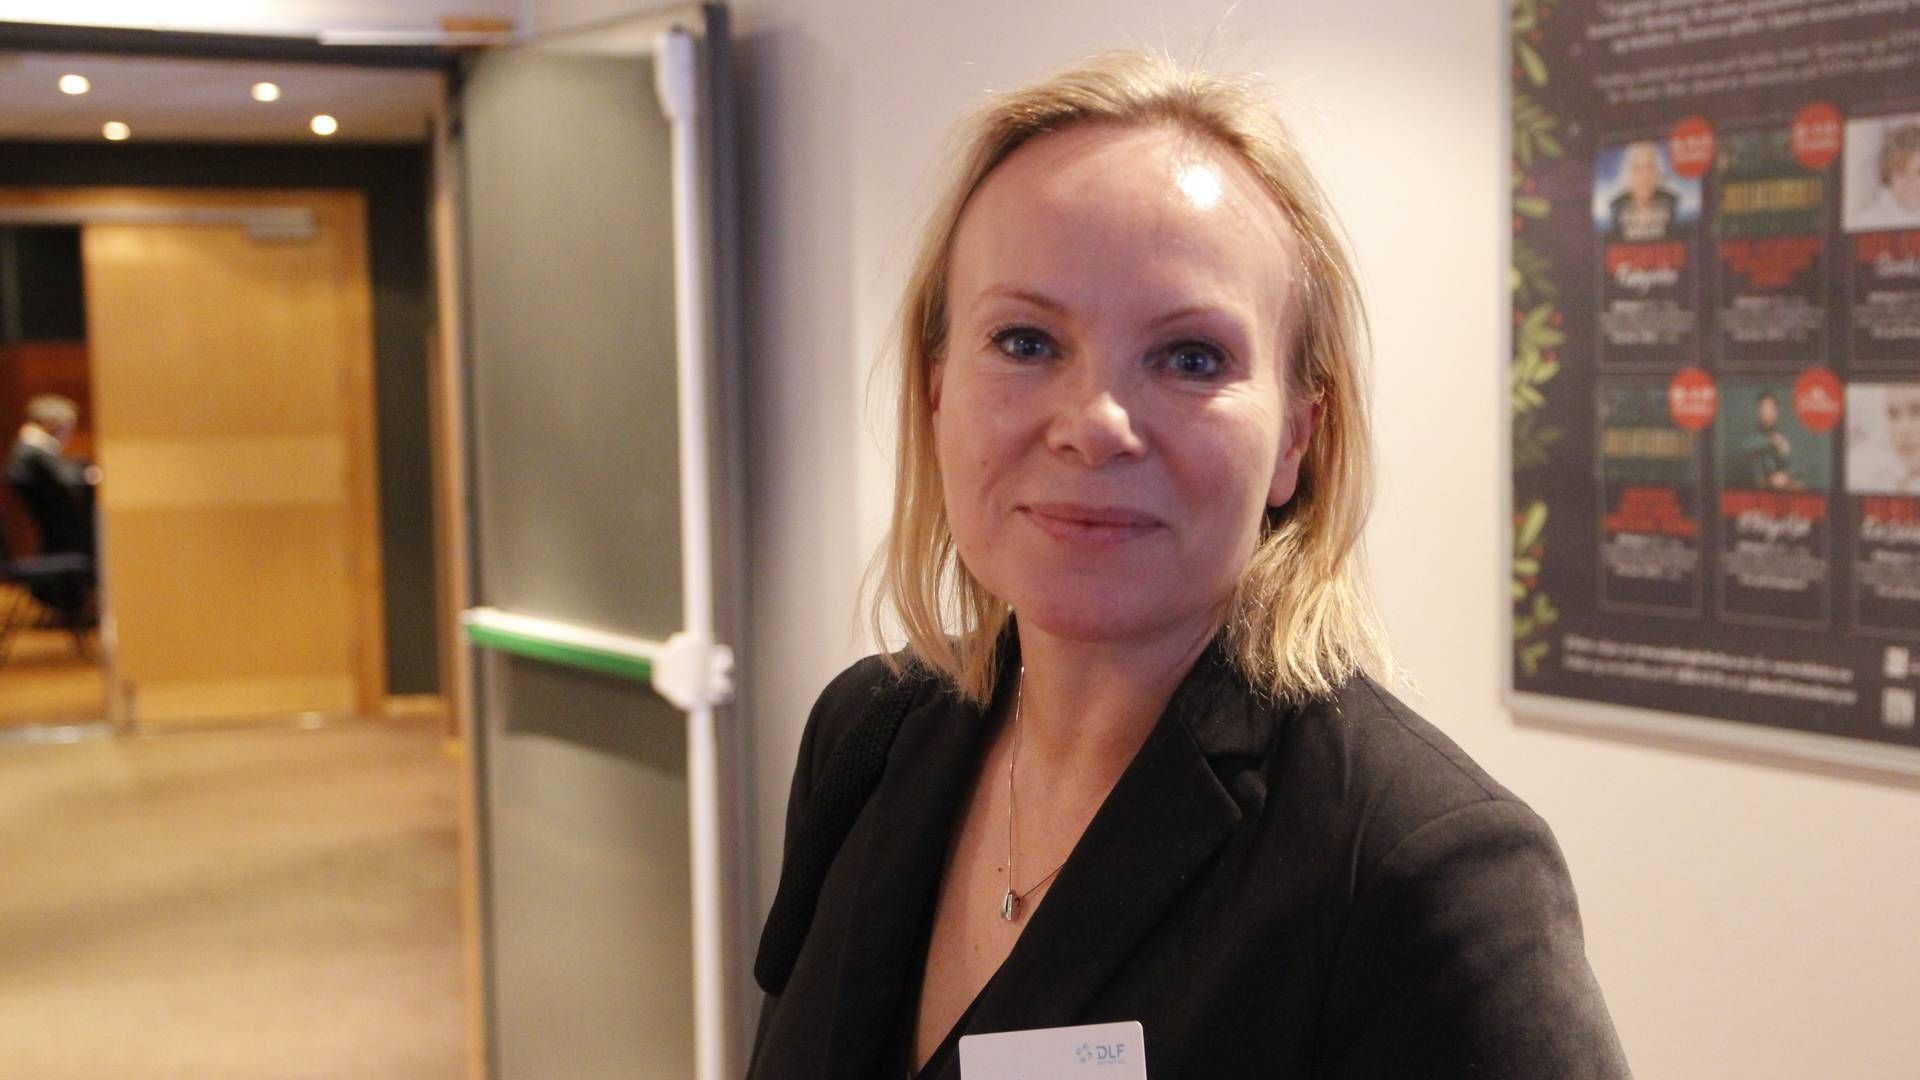 FORVERRING: Linda Vist, bransjedirektør for Handel i NHO Service og Handel, sier at det er flere som forventer forverring i markedet enn de som forventer forbedring. | Foto: Øystein Engh